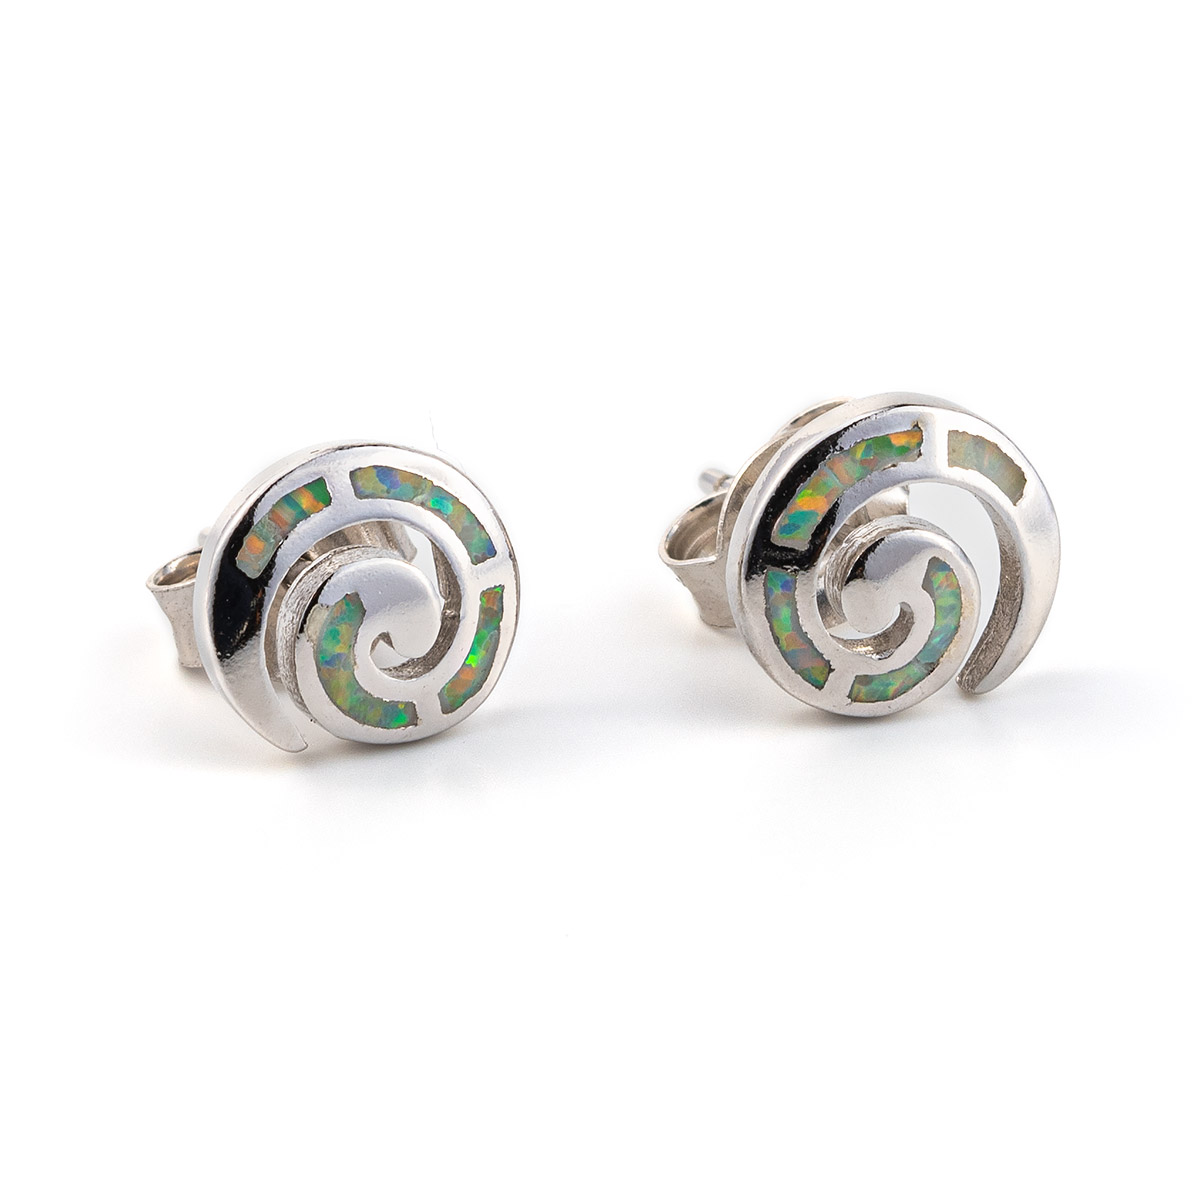 White Opal Silver Spiral Stud Earrings